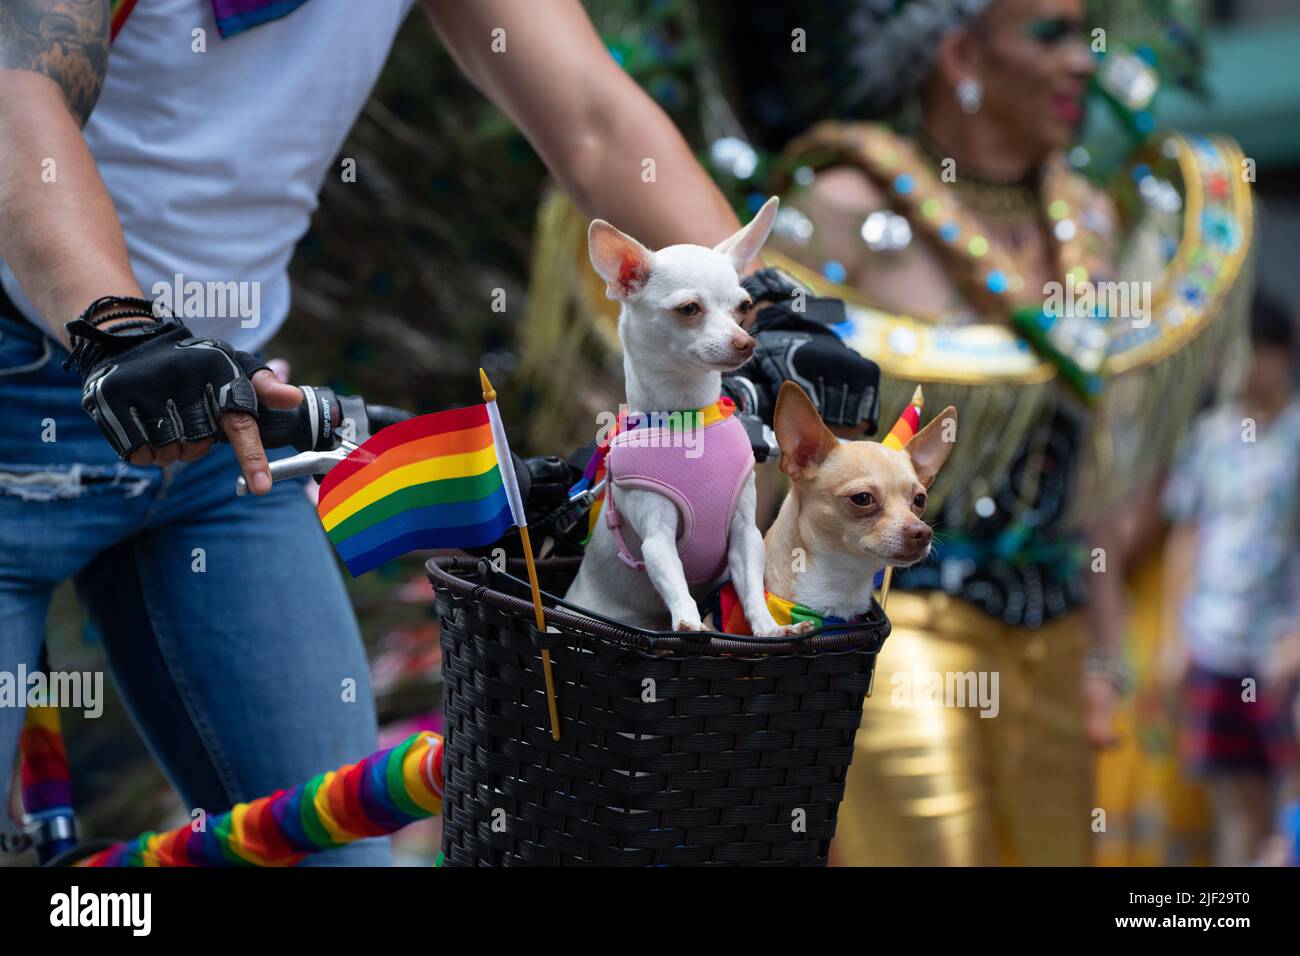 Zwei Chihuahuas nehmen an der Toronto Pride Parade Teil, indem sie in einem Fahrradkorb fahren. Stockfoto